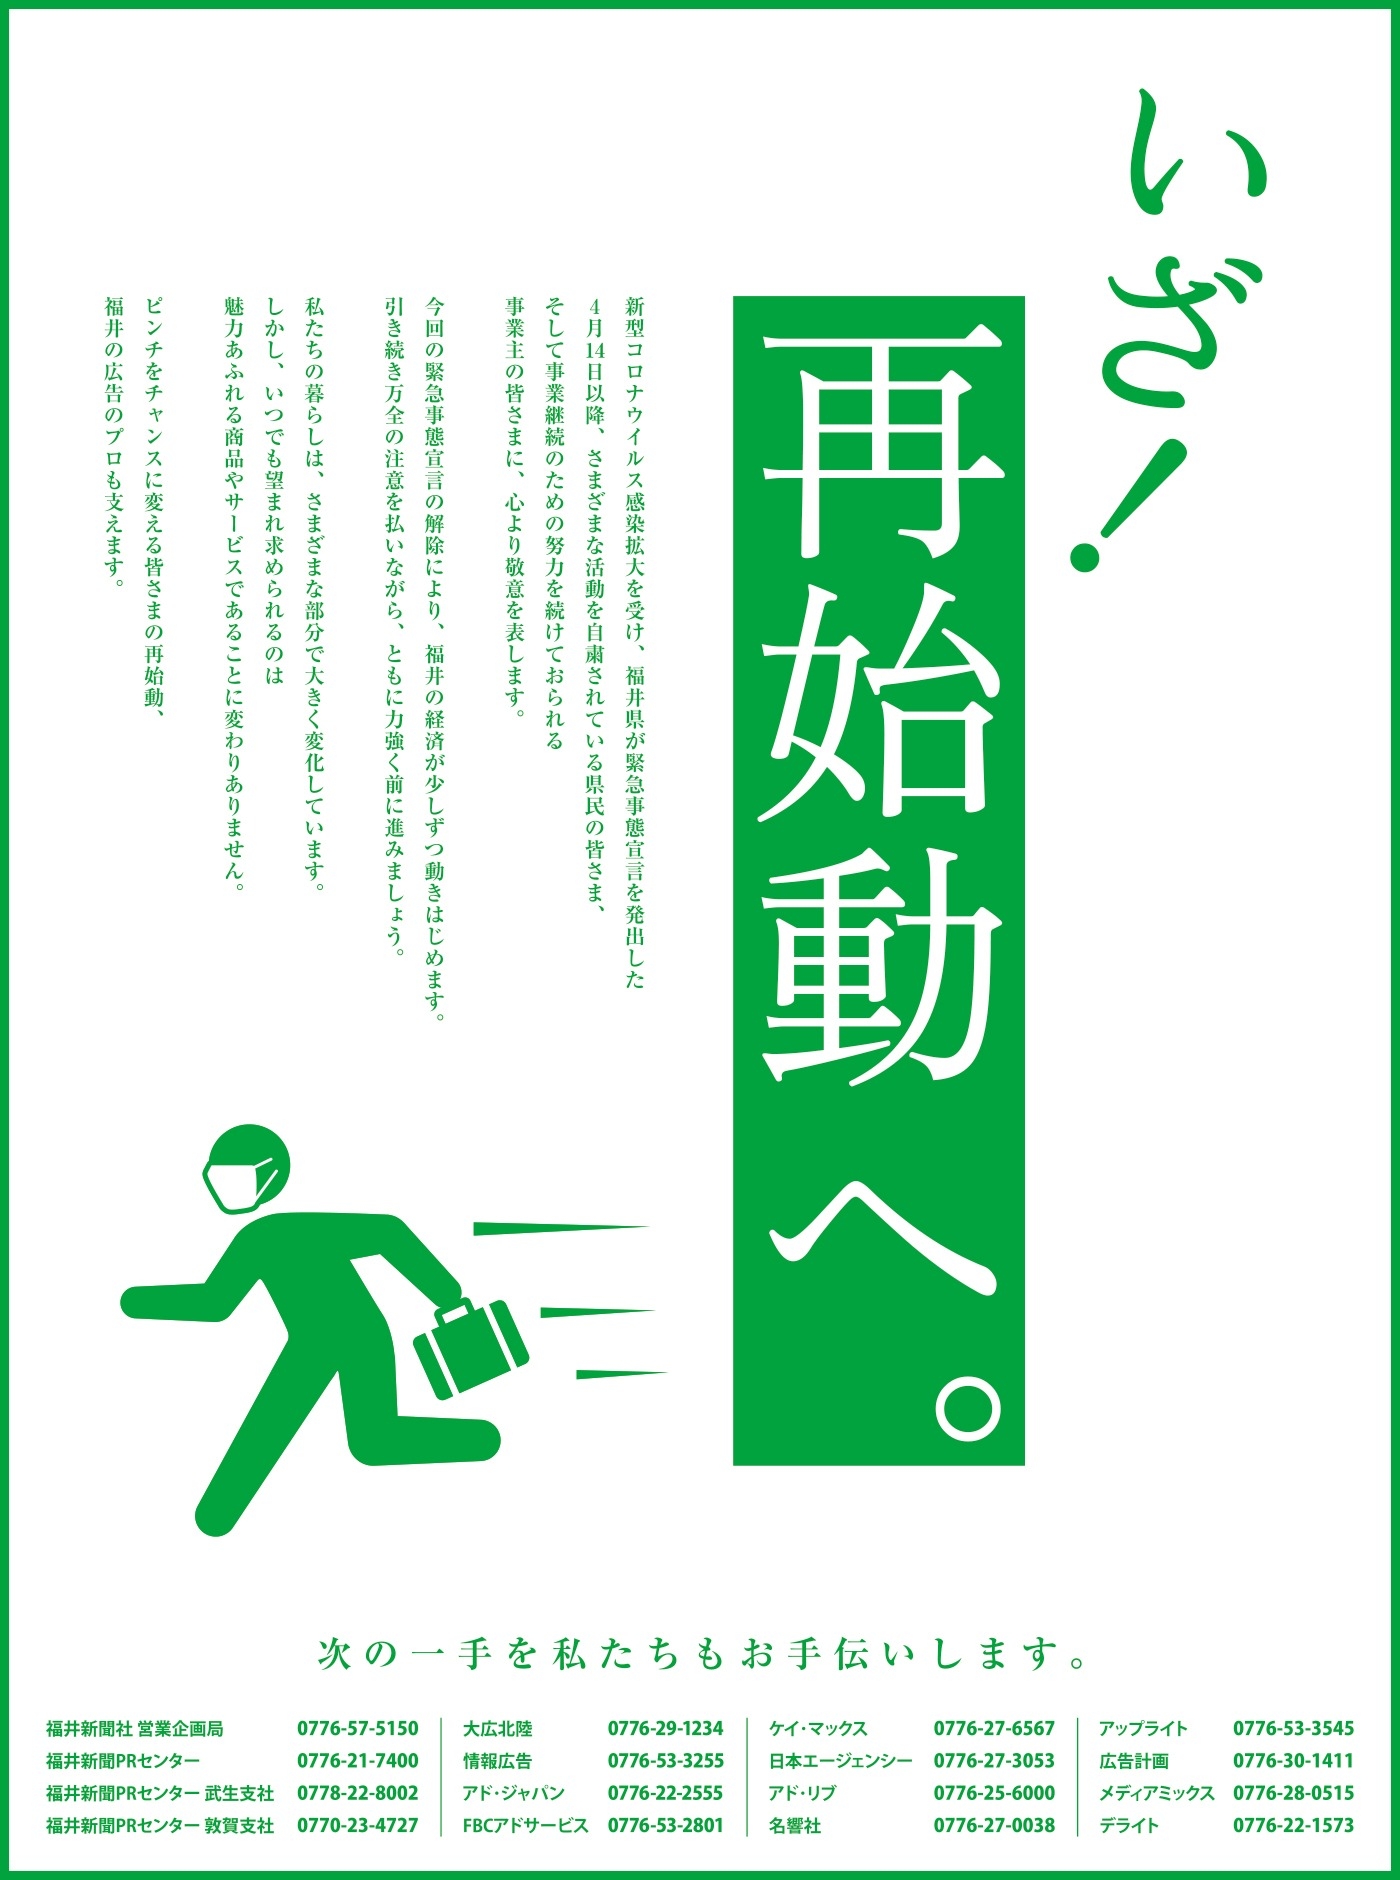 いざ！再始動へ。次の一手を私たちもお手伝いします。／福井新聞 15段広告